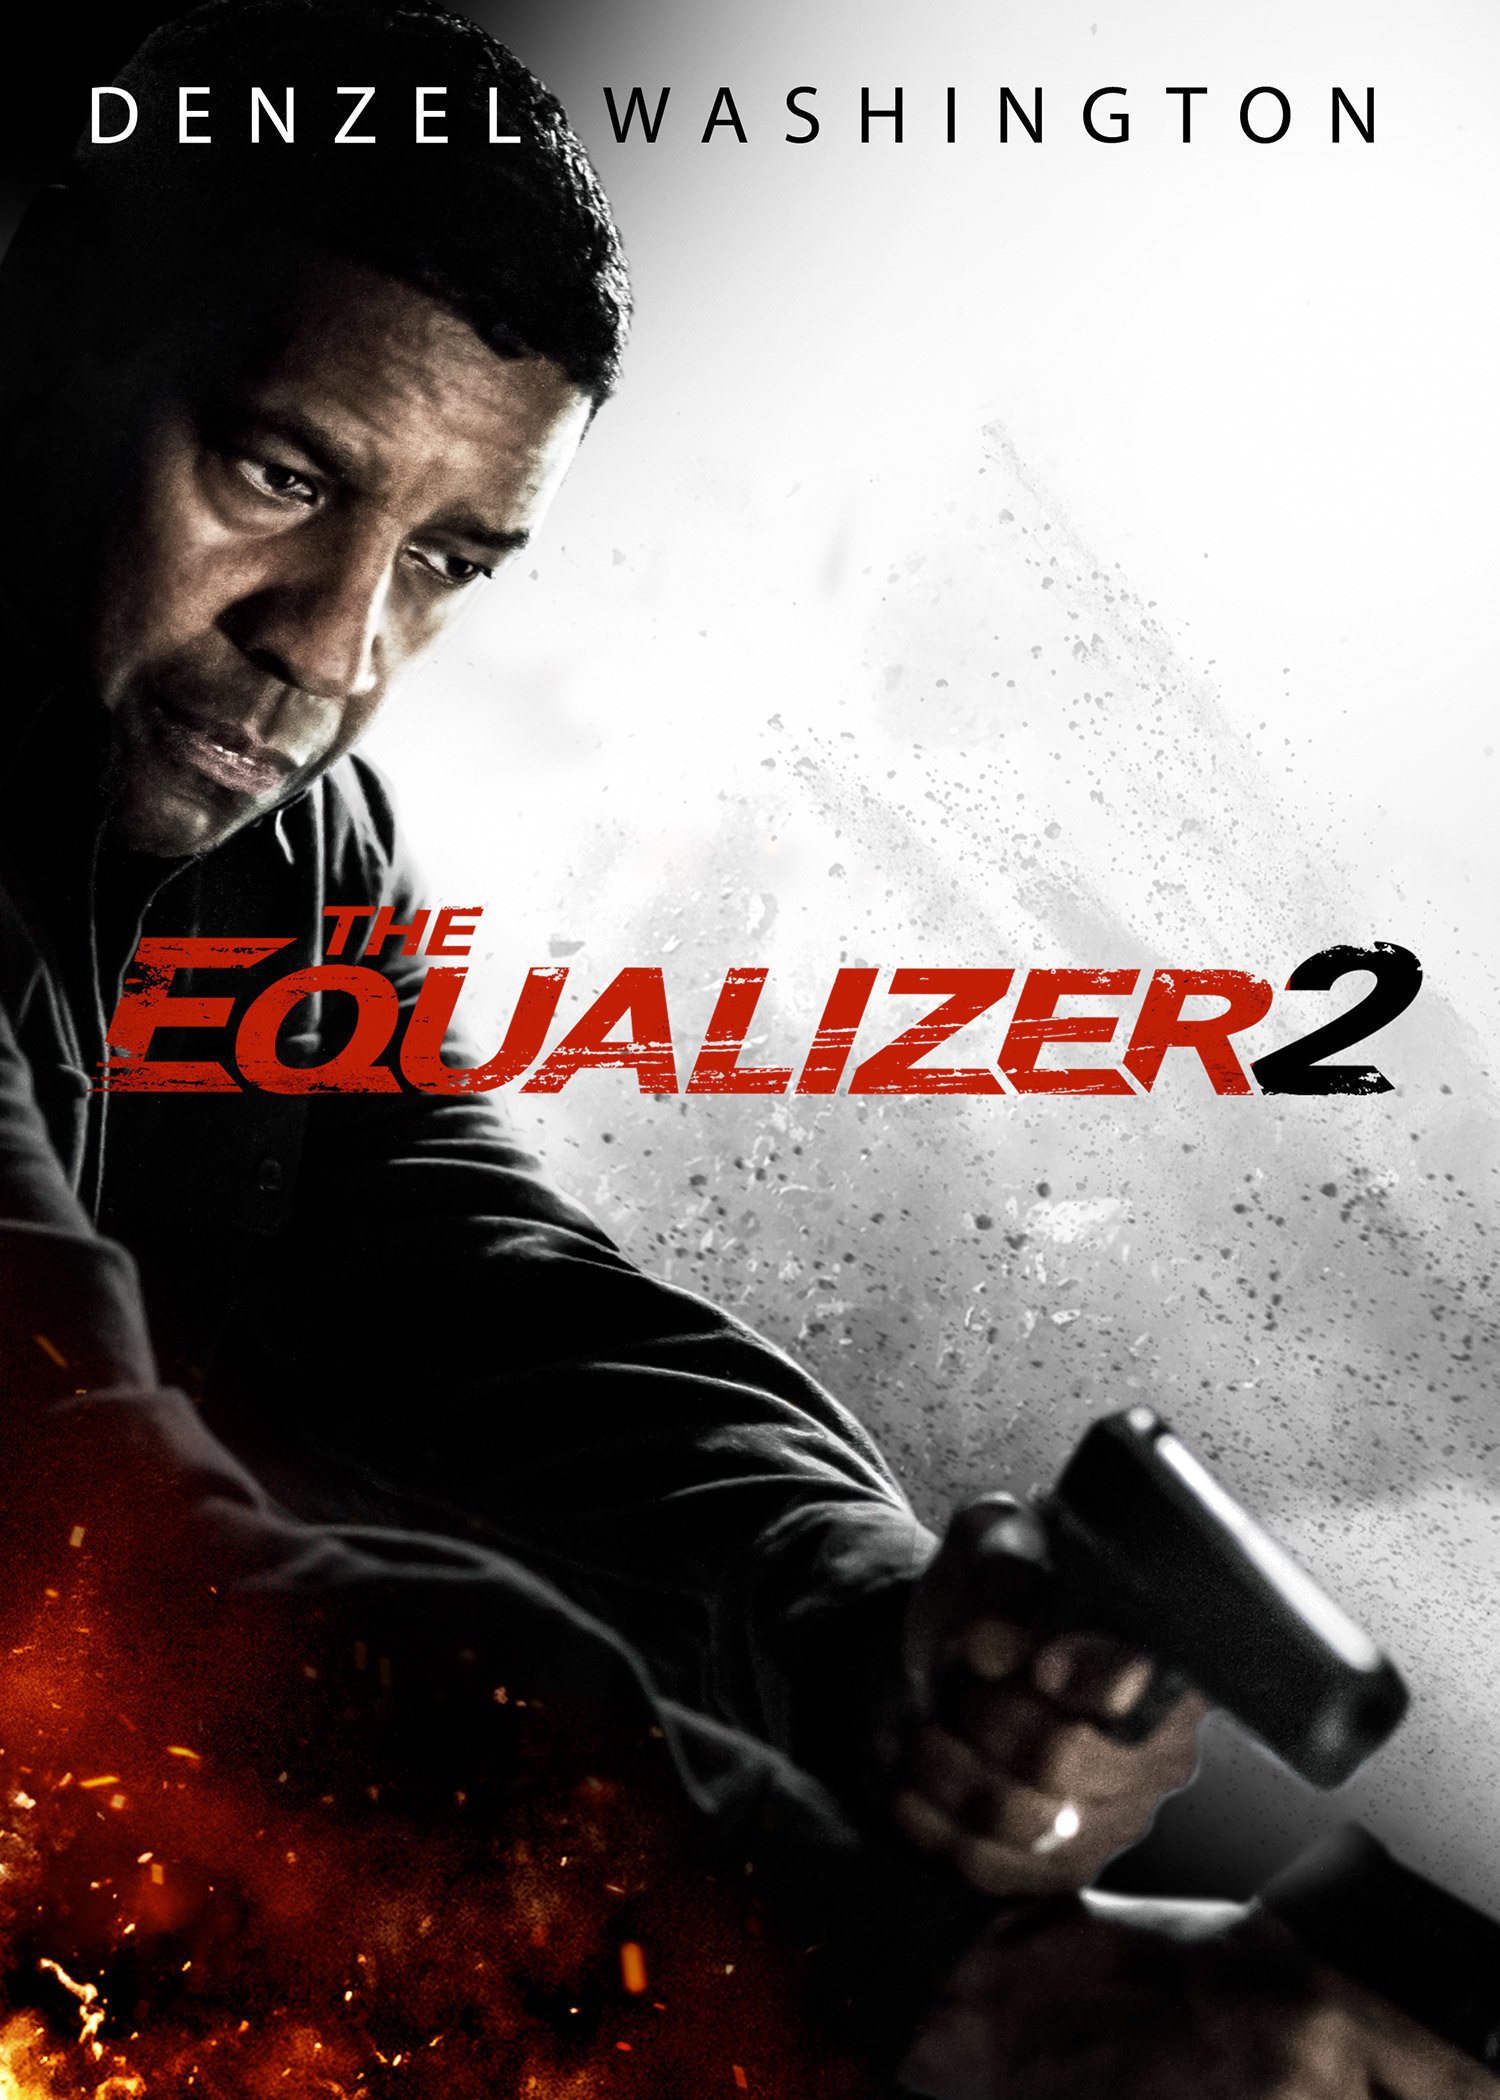 The Equalizer 2 Official Trailer - Starring Denzel Washington 